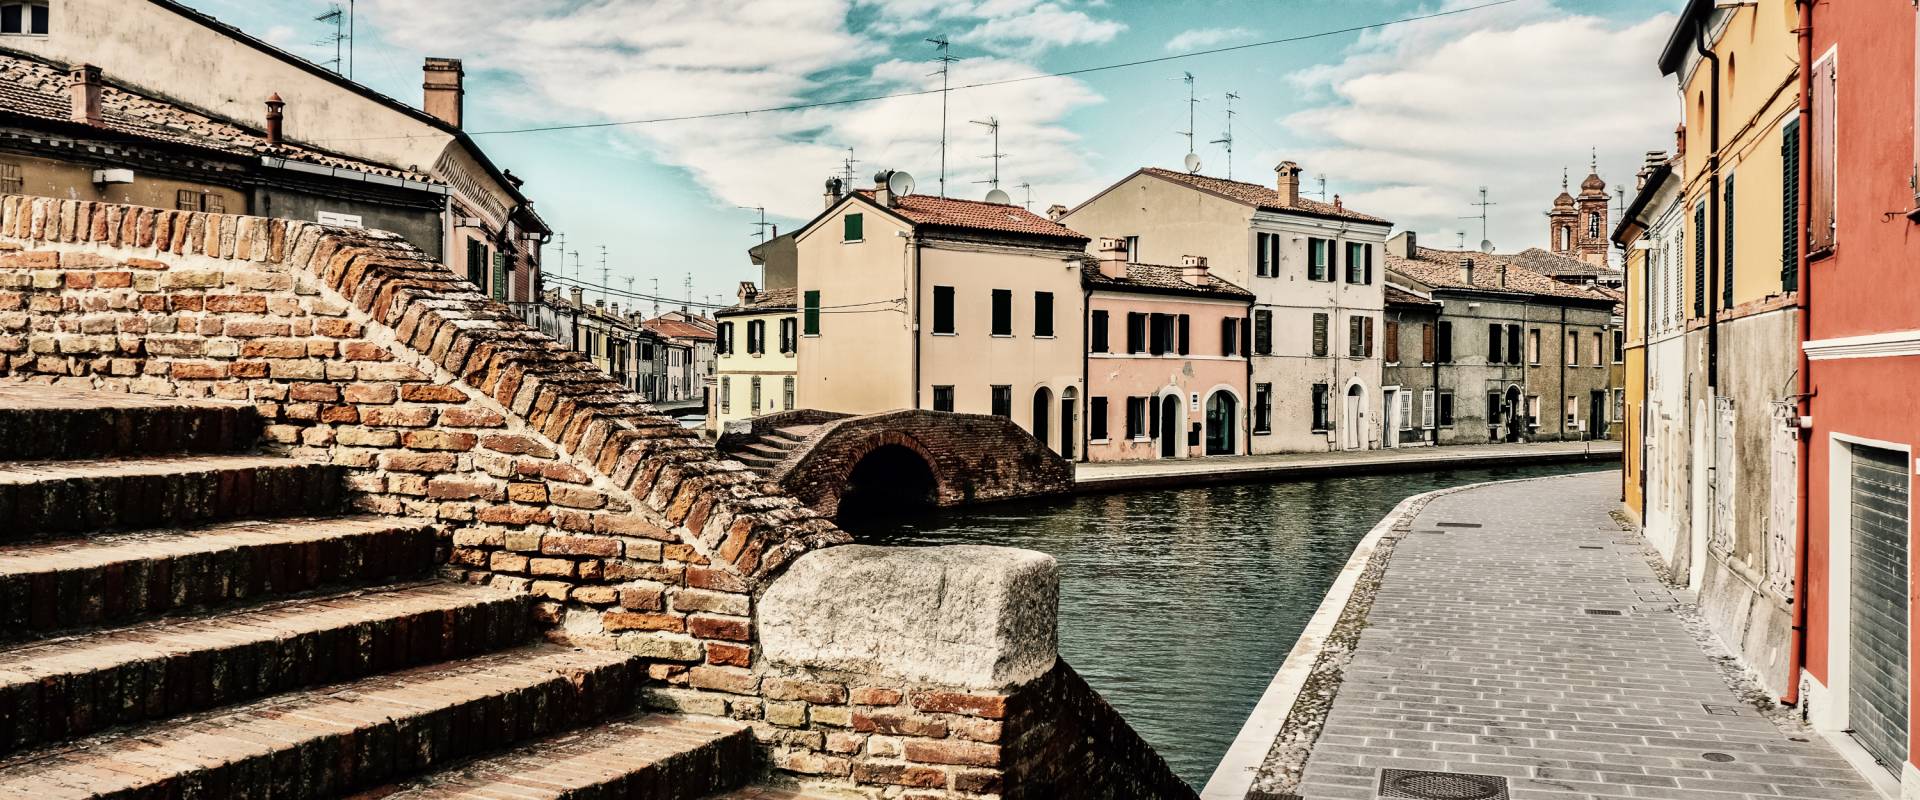 -- Centro storico con i suoi ponti - Comacchio -- photo by Vanni Lazzari